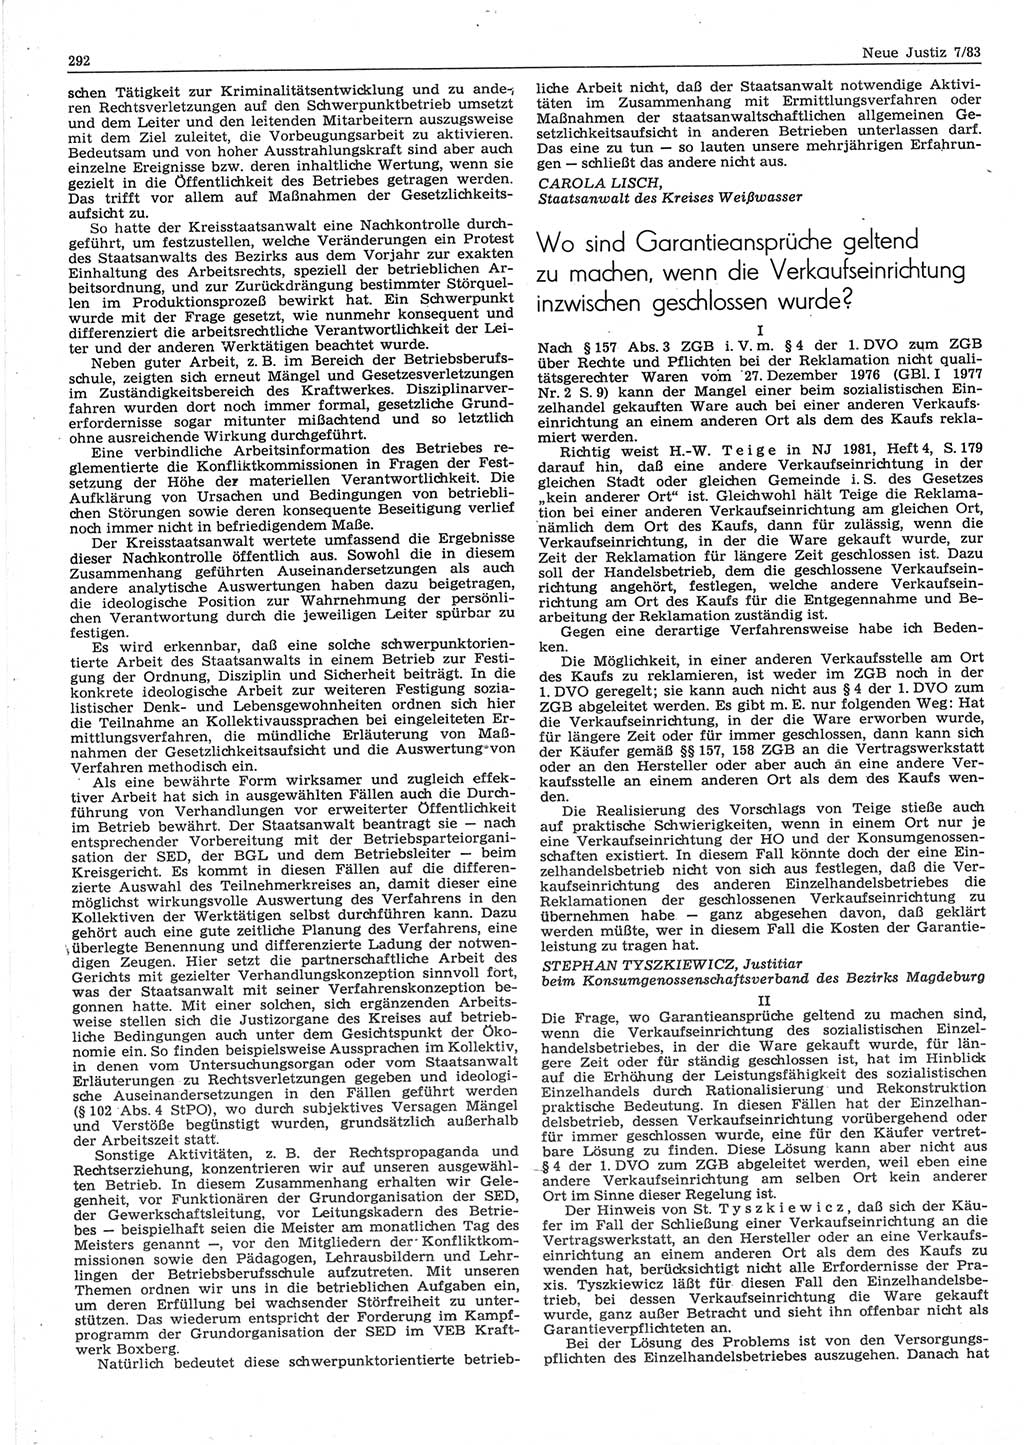 Neue Justiz (NJ), Zeitschrift für sozialistisches Recht und Gesetzlichkeit [Deutsche Demokratische Republik (DDR)], 37. Jahrgang 1983, Seite 292 (NJ DDR 1983, S. 292)